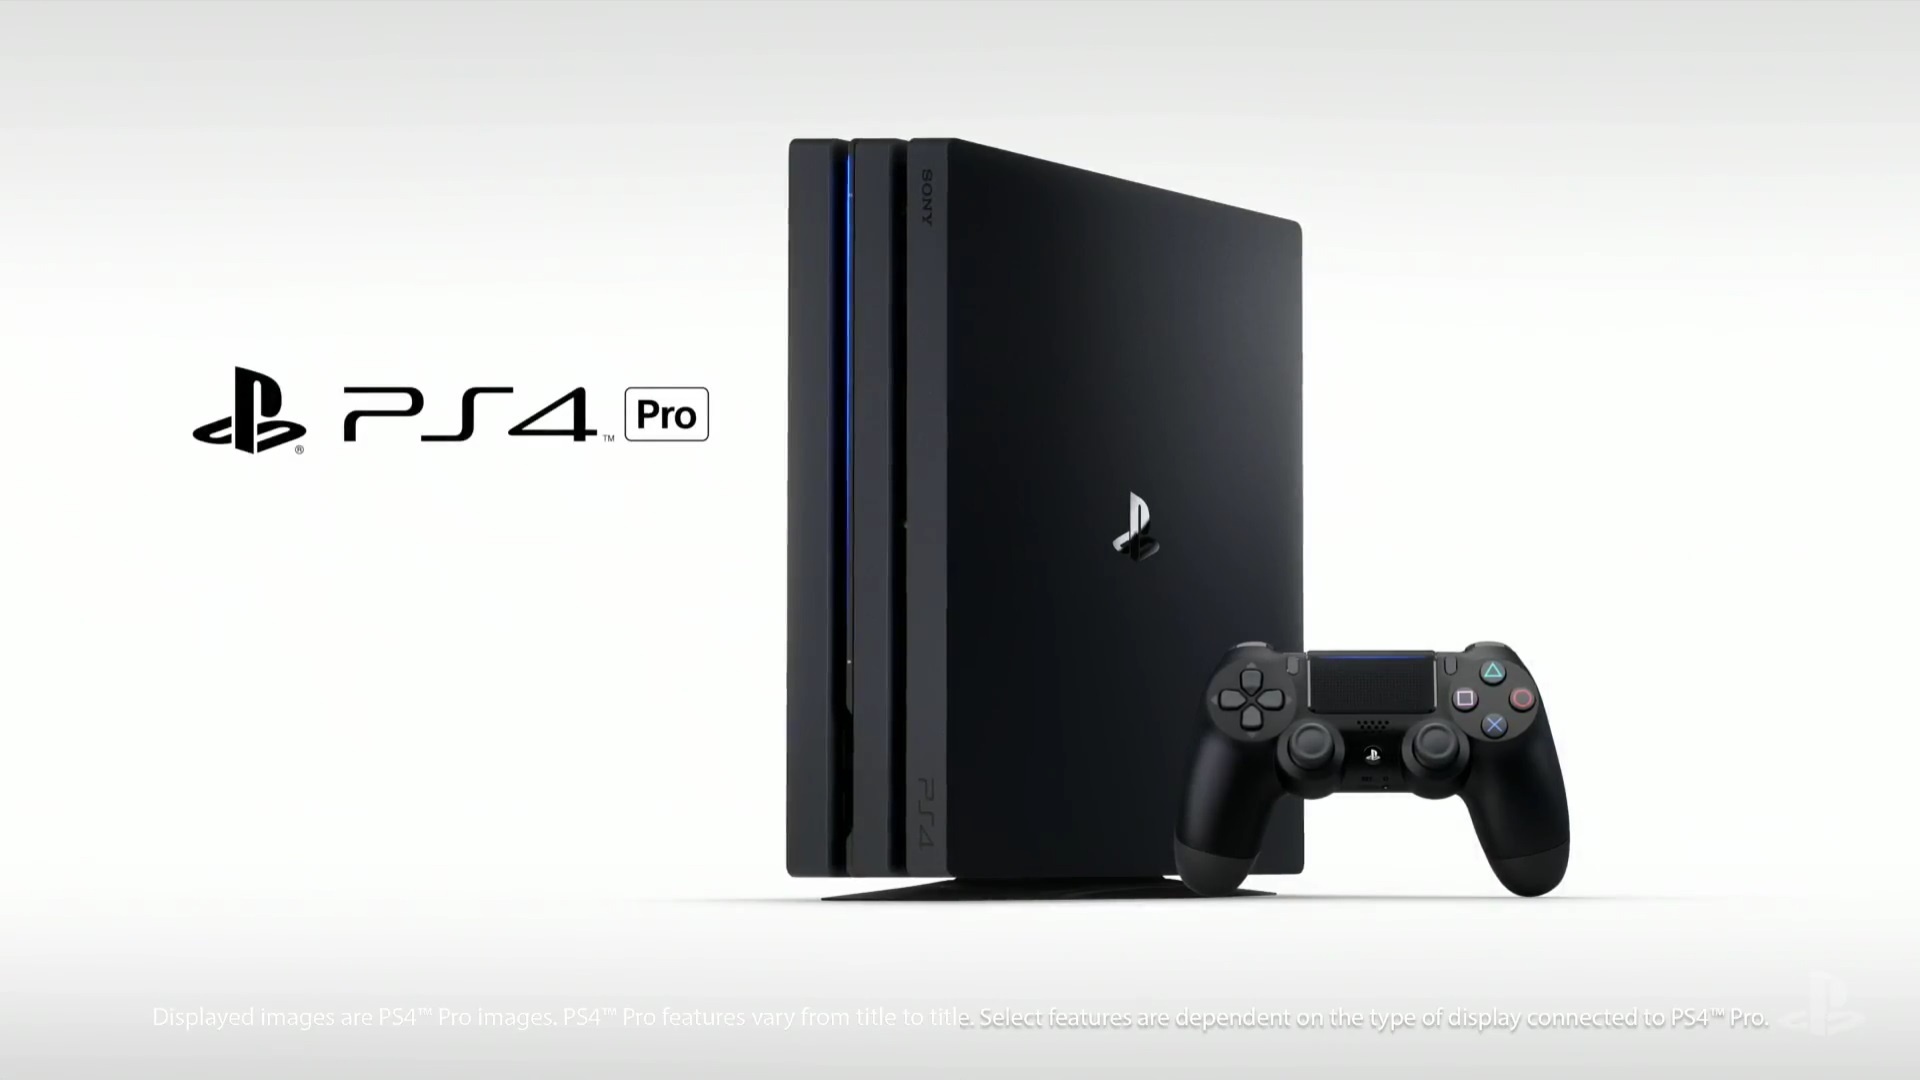 PS4 Pro - Neue Playstation 4-Konsole mit 4k und HDR